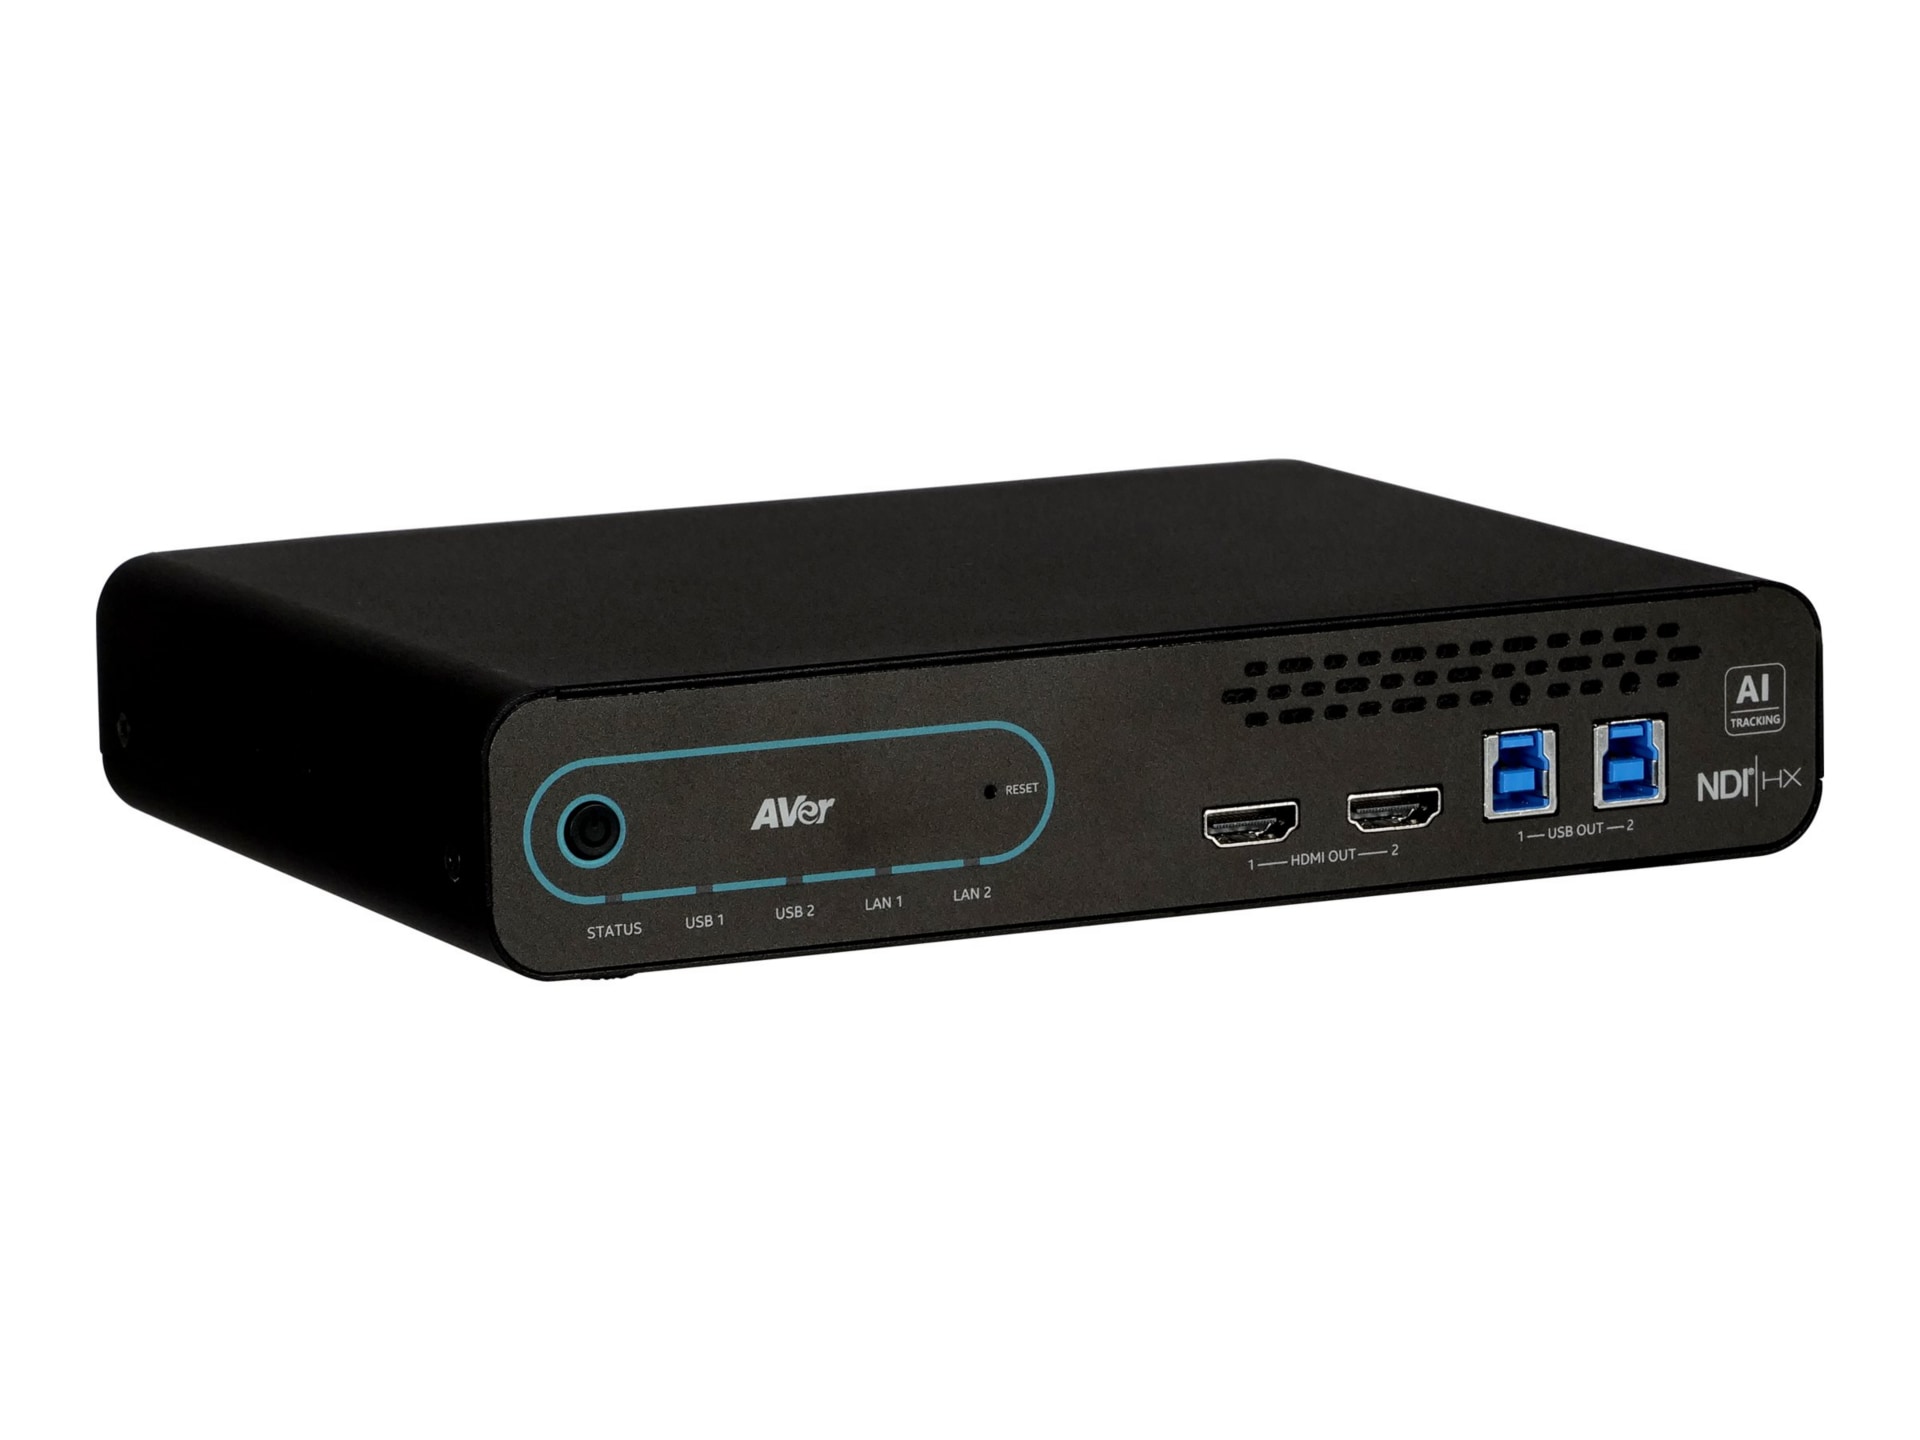 AVer Pro MT300N - video/audio switch - NDI Matrix Tracking Box - 2 ports